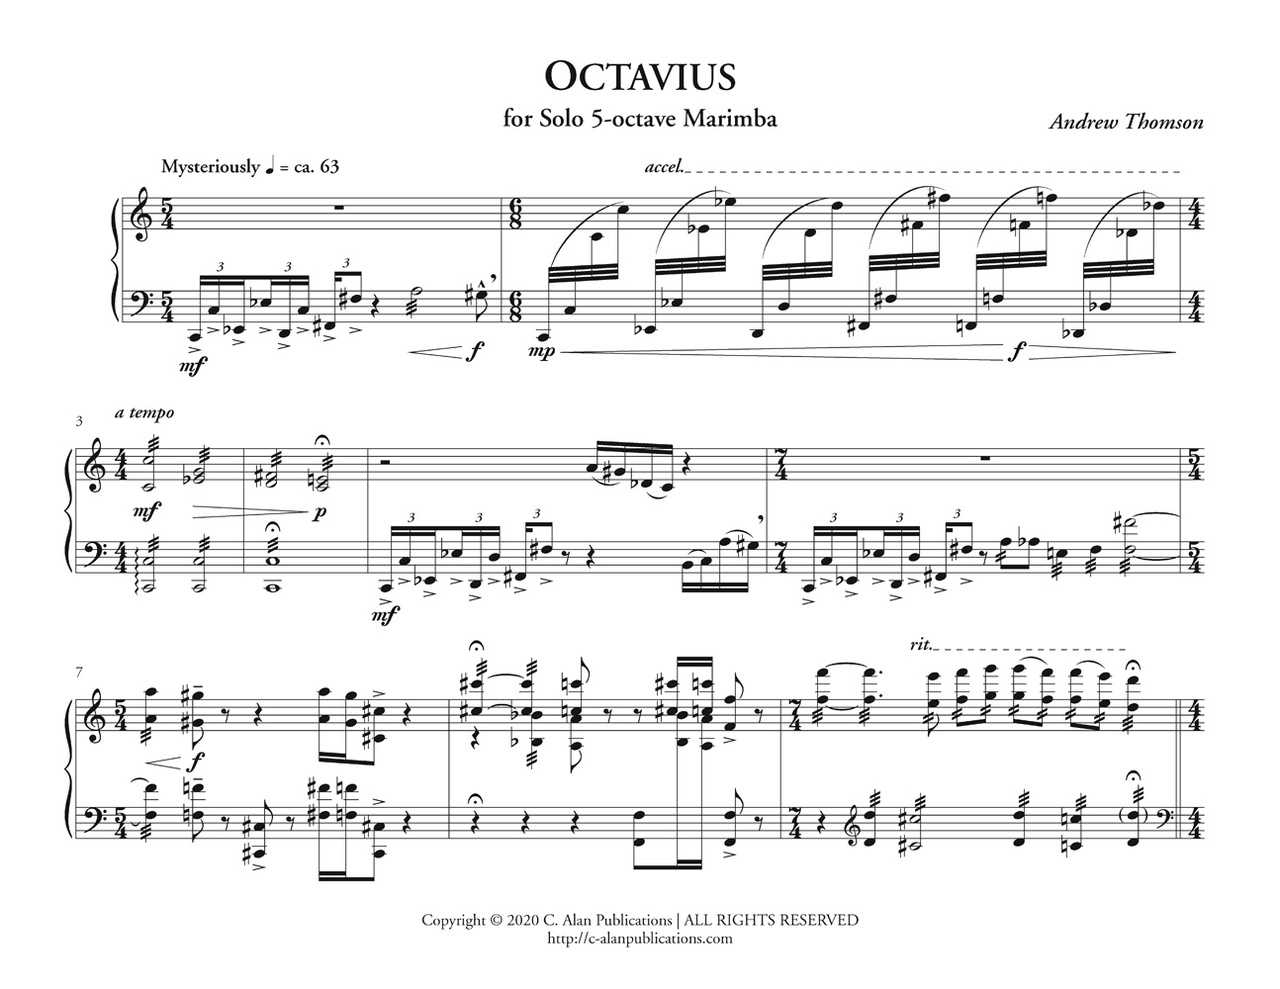 Octavius by Andrew Thomson